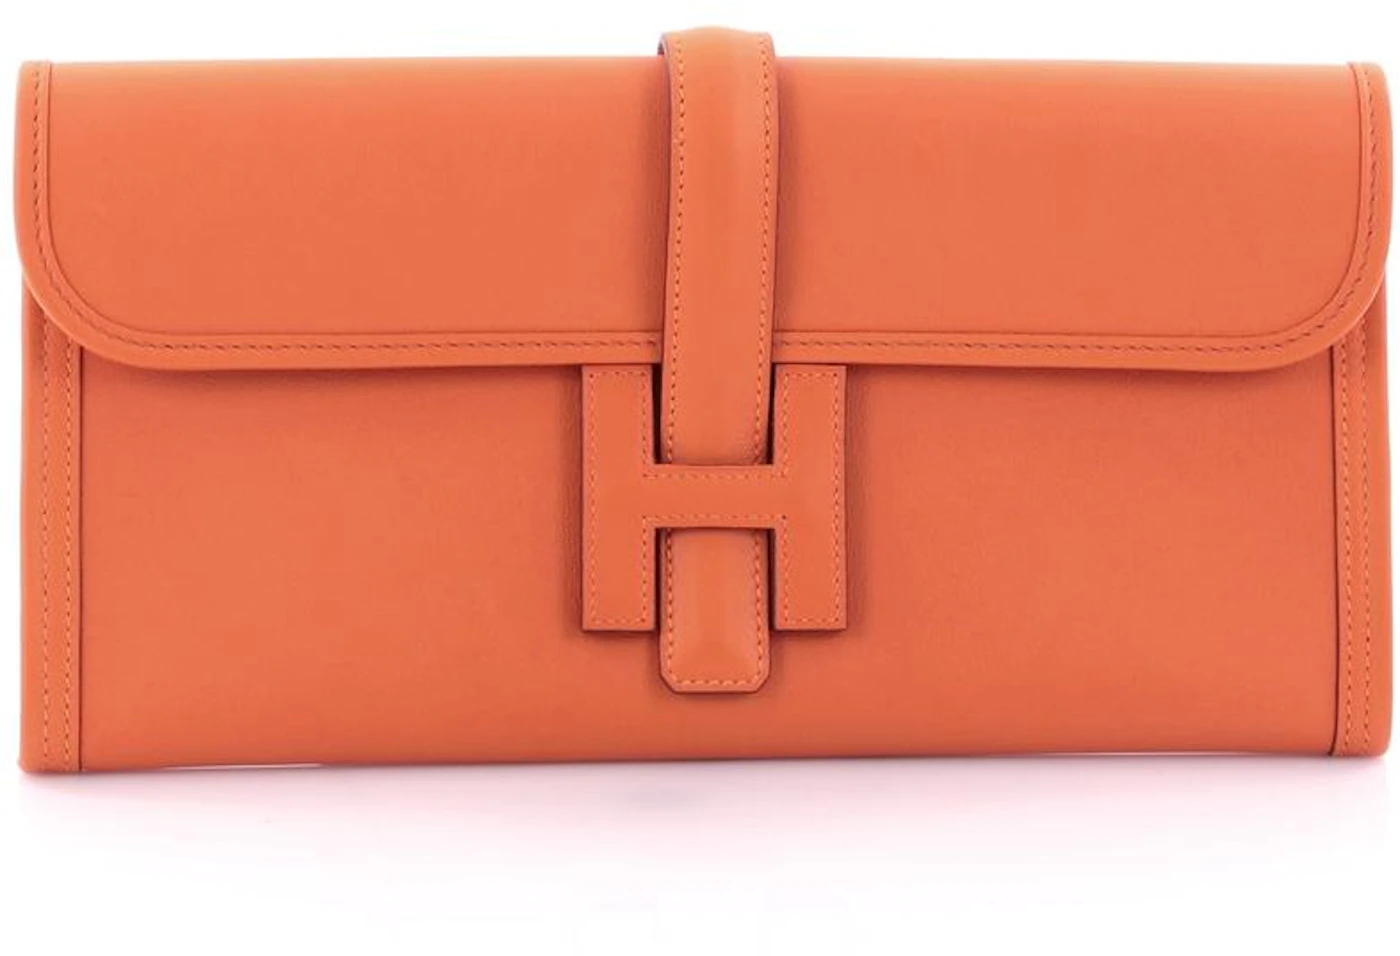 Hermès Jige Elan 29 Clutch Bag